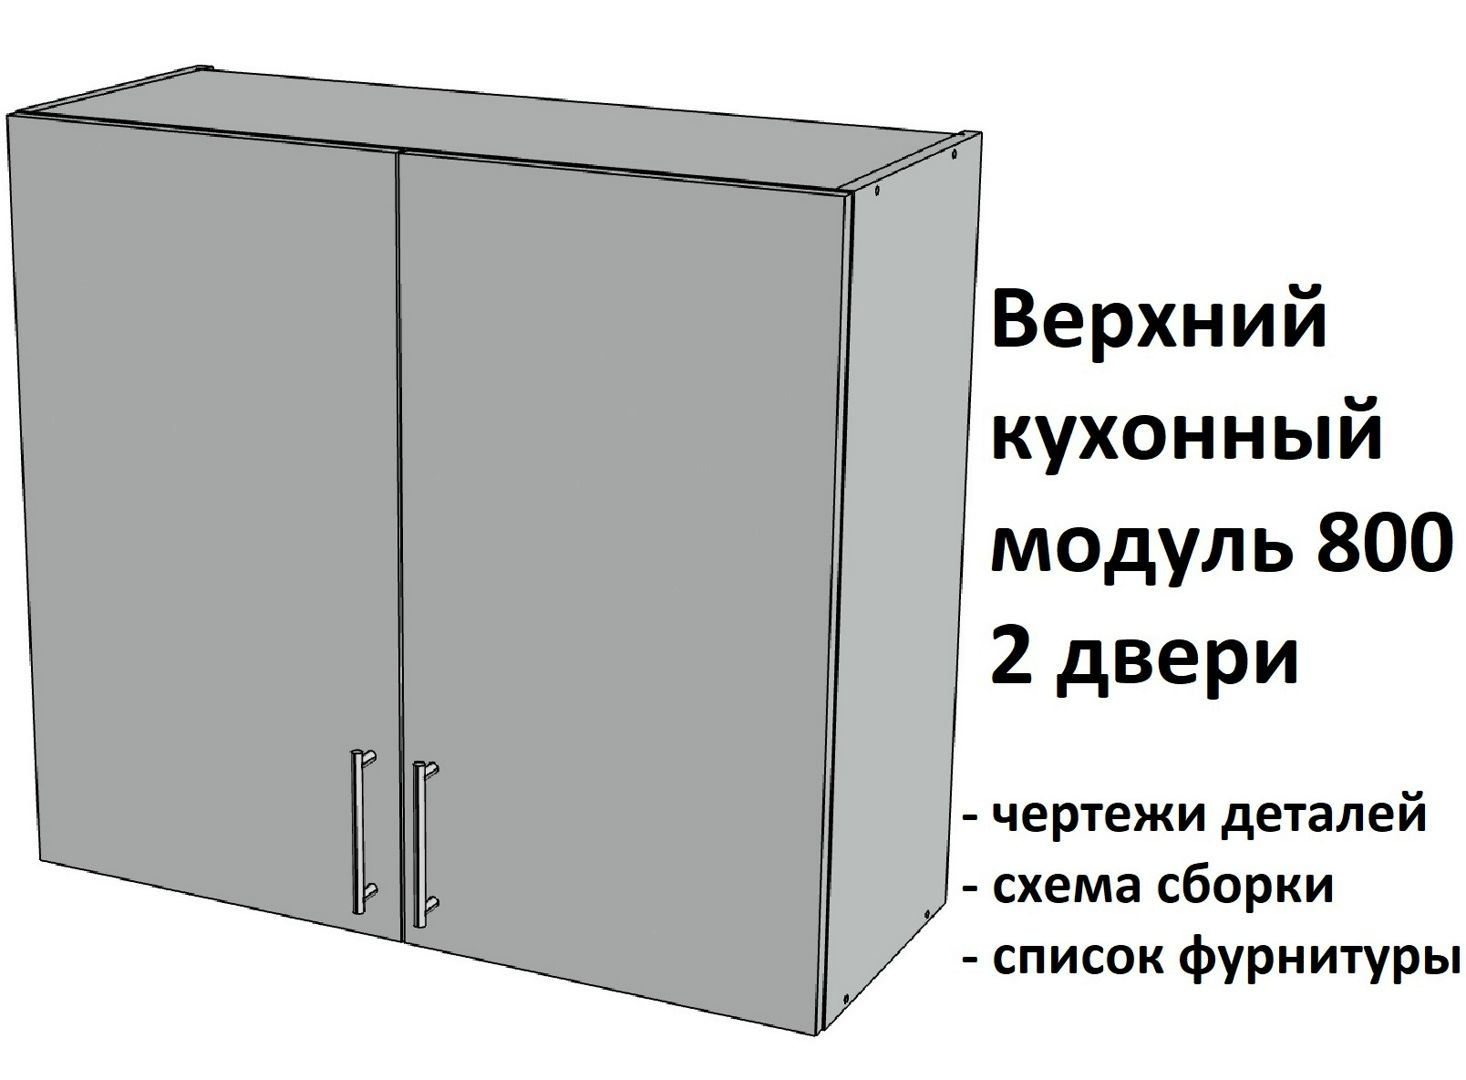 Верхний подвесной кухонный модуль 800, 2 двери - Комплект чертежей для изготовления корпусной мебели